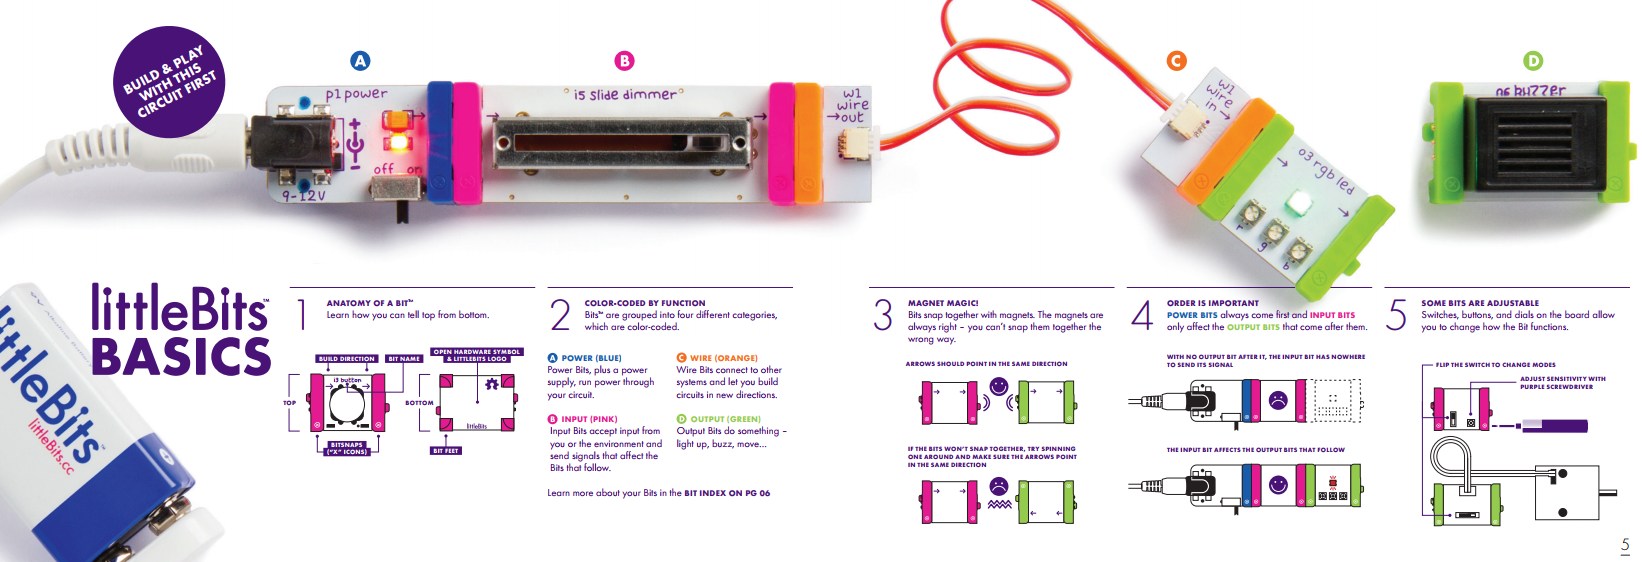 littleBits Basics